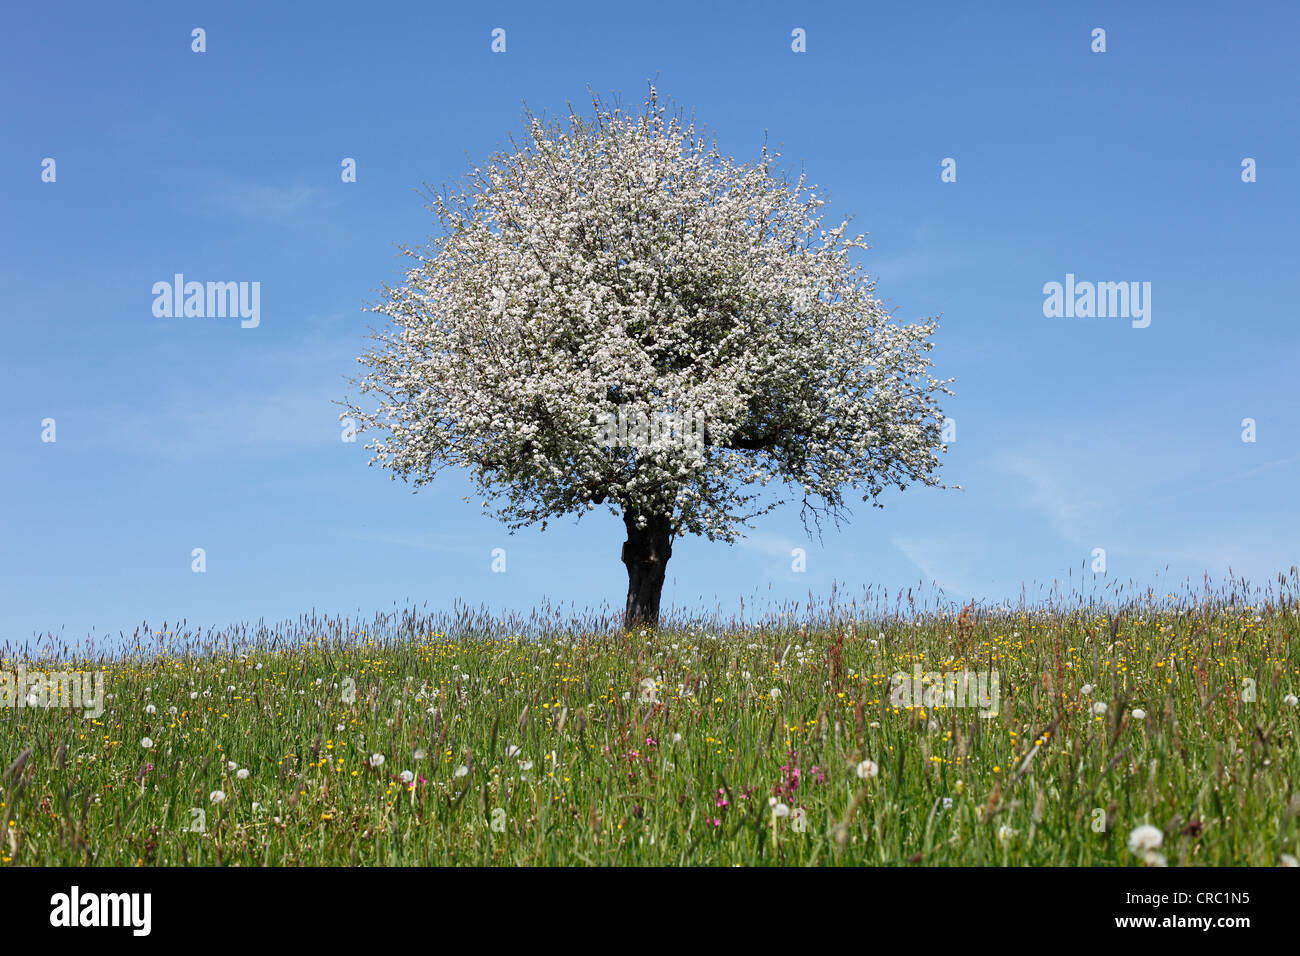 Fleurs de pommier (Malus) dans le pré, Oberstaufen, souabe, Allgaeu, Bavaria, Germany, Europe Banque D'Images